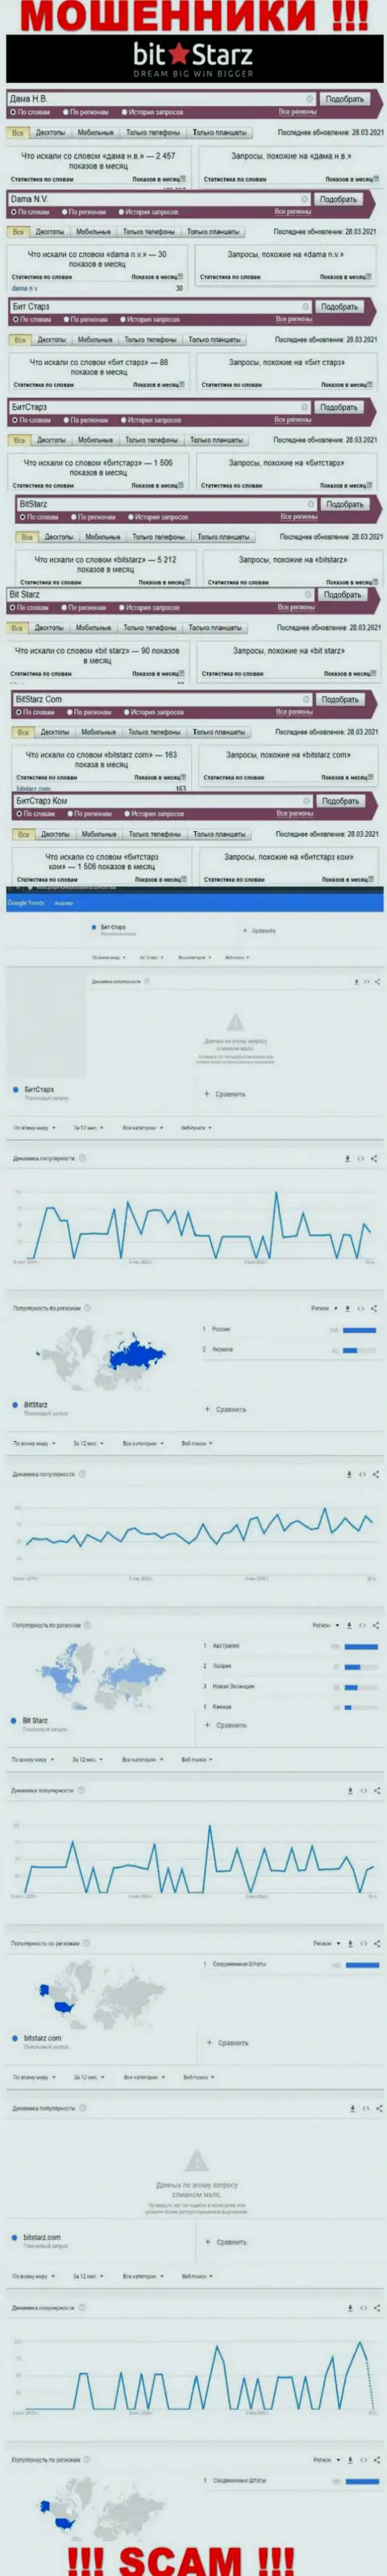 Статистические показатели о запросах в поисковиках глобальной интернет сети данных об конторе БитСтарз